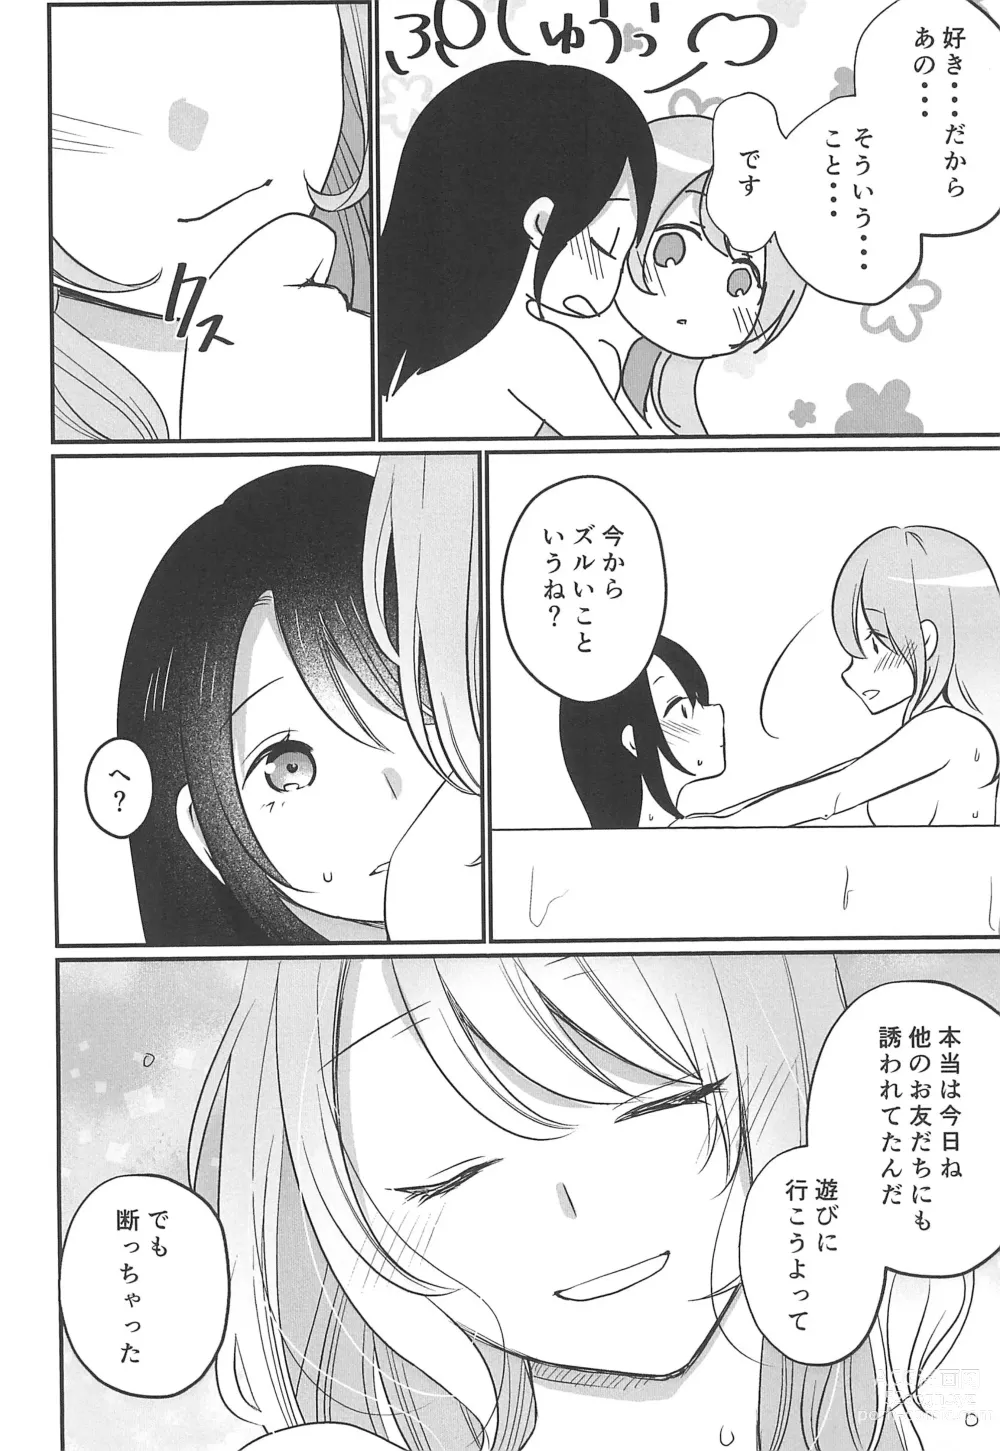 Page 16 of doujinshi Kitto Sonna Natsu no Hi no Omoide